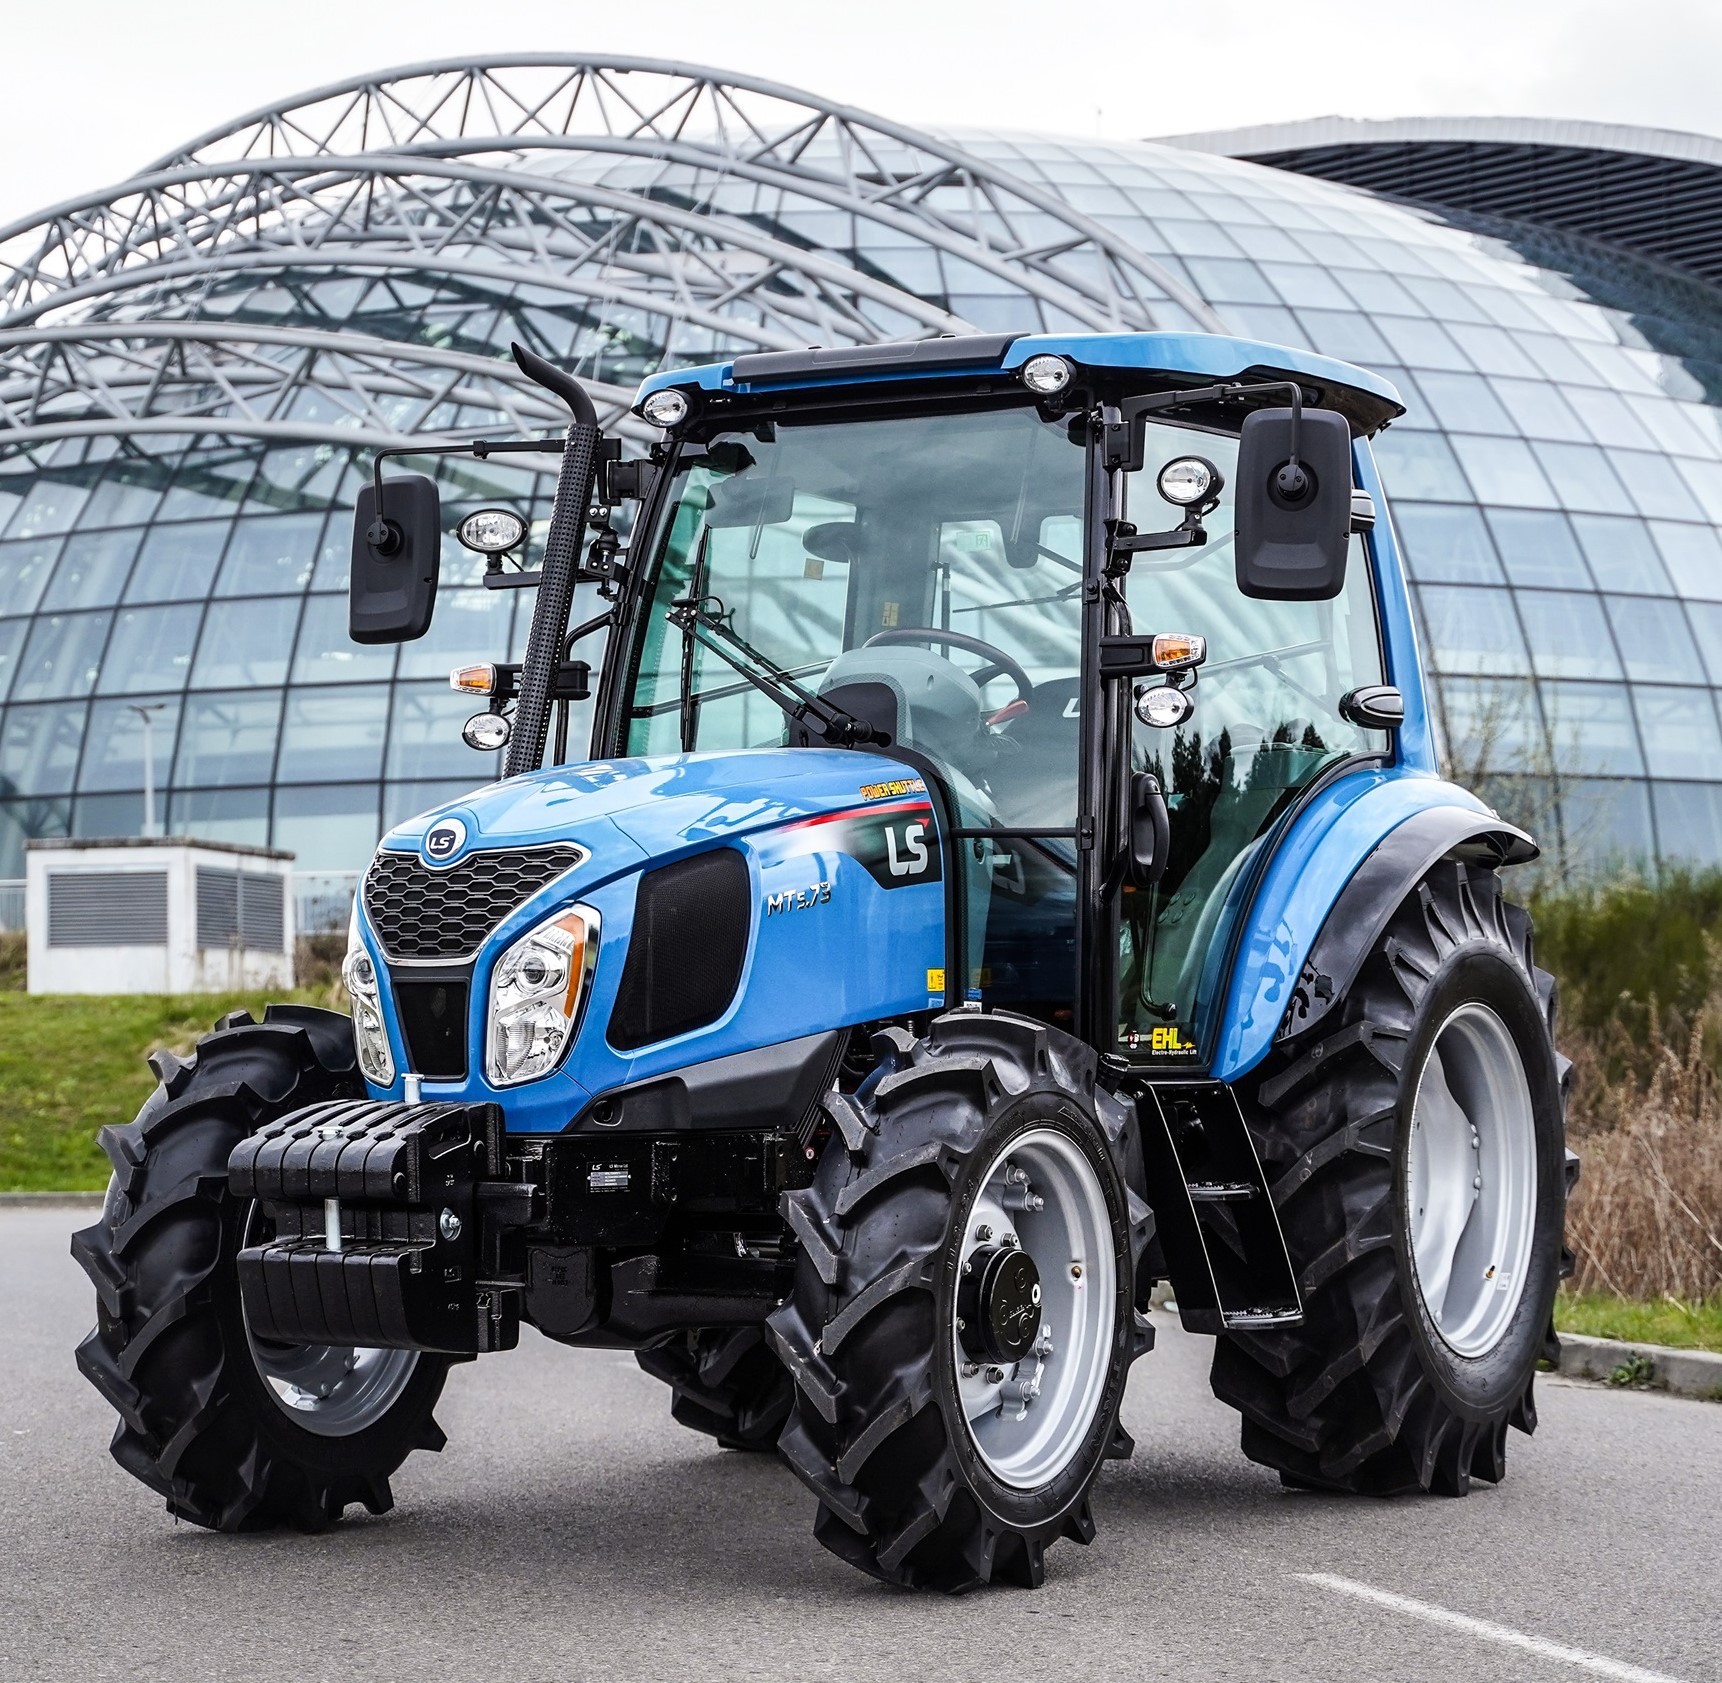 Wzrost popularności marki LS Tractor na rynku ciągników rolniczych.